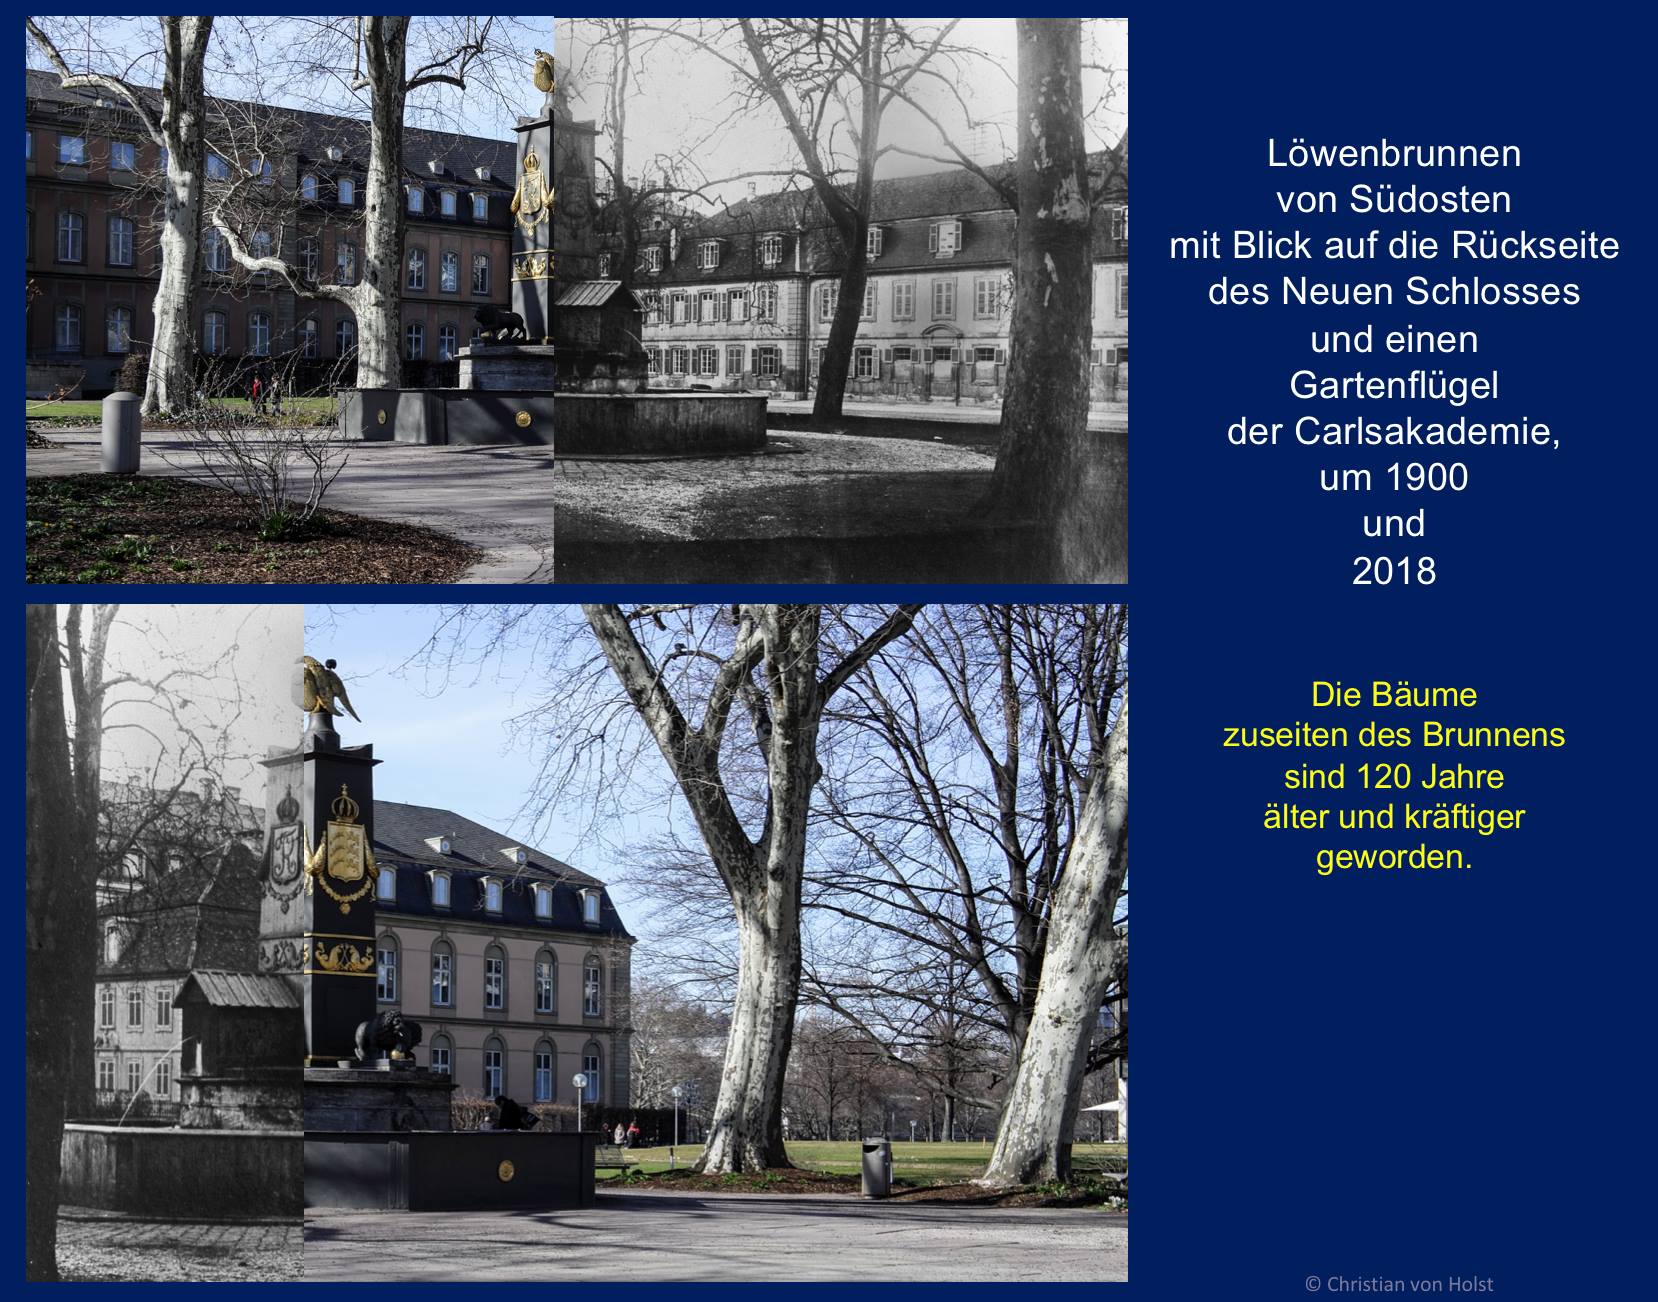 Carlsakademie: Vorkriegs- und Nachkriegsjahre am Beispiel Löwenbrunnen